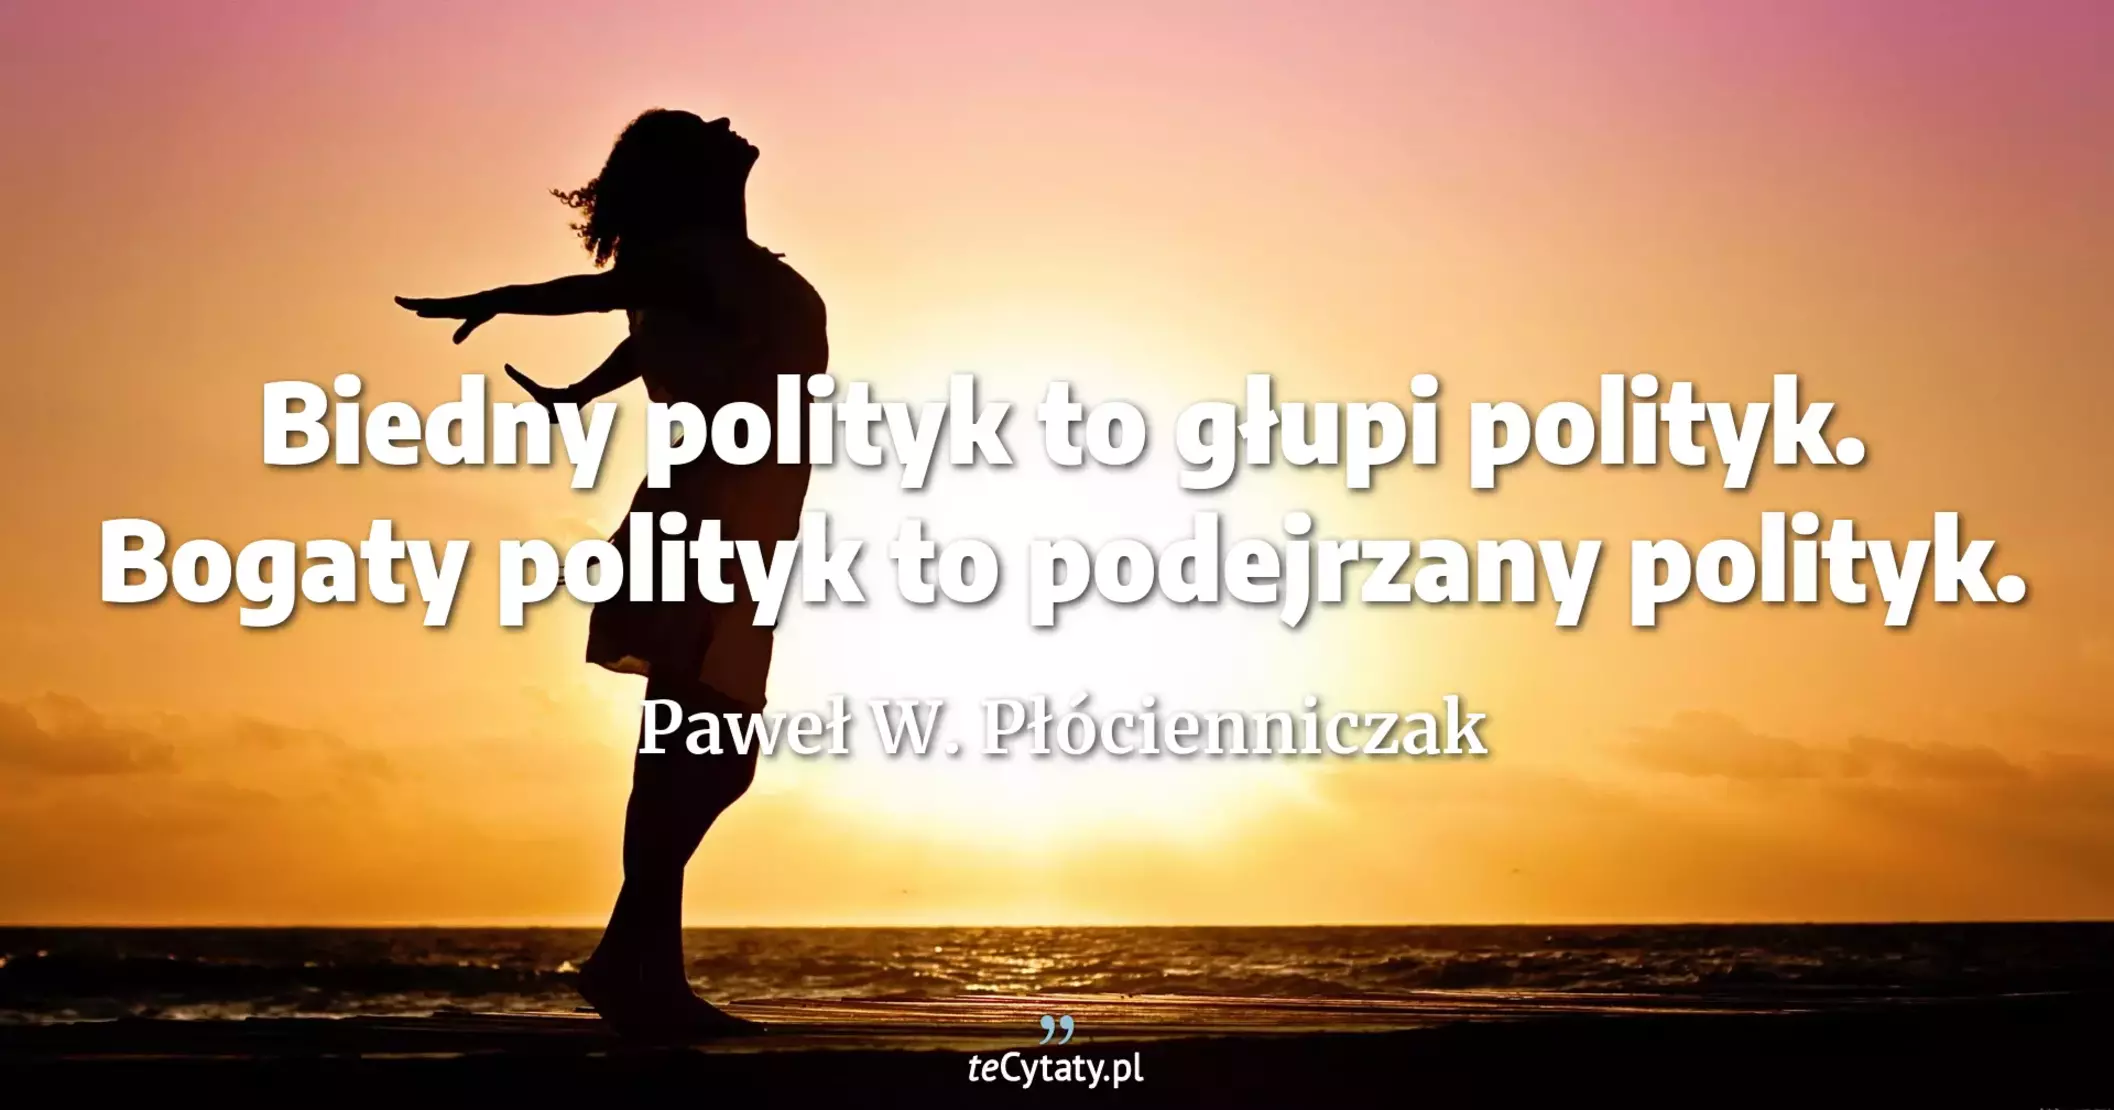 Biedny polityk to głupi polityk. Bogaty polityk to podejrzany polityk. - Paweł W. Płócienniczak